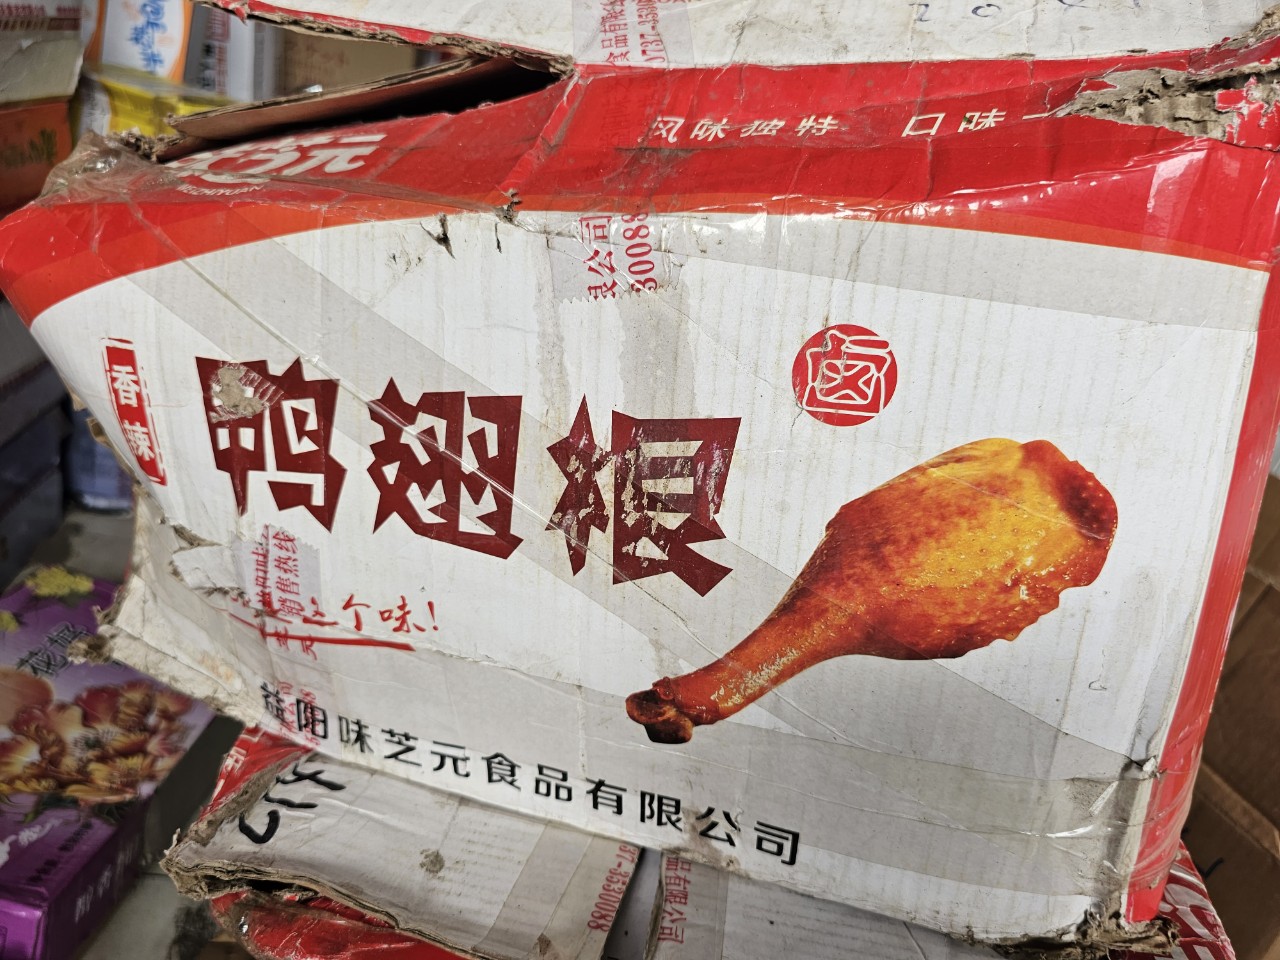 Quản lý thị trường Hà Nội: Tạm giữ hơn 4.000 sản phẩm thực phẩm ghi nhập lậu